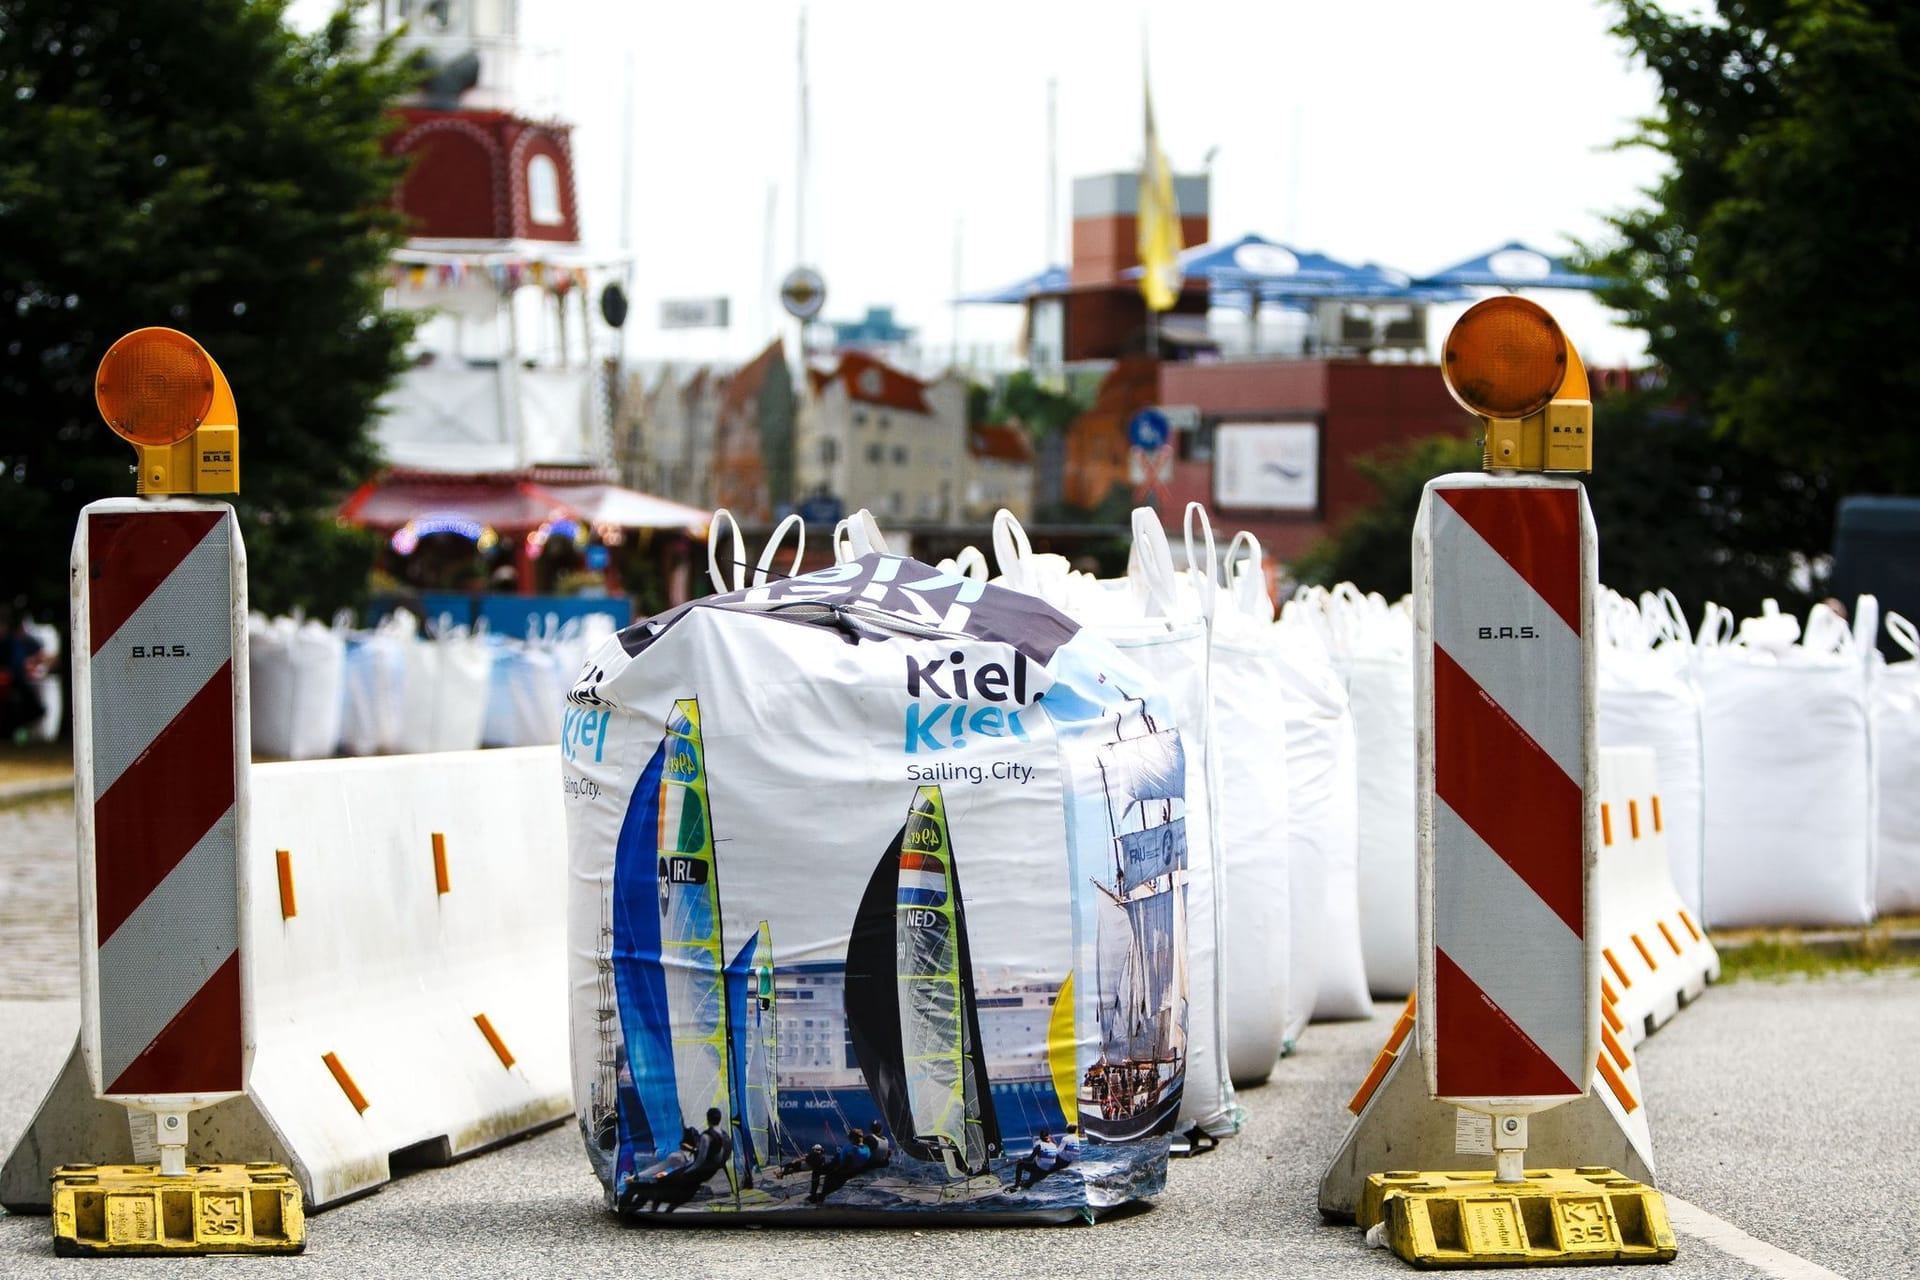 Polizei passt Sicherheitskonzept zur Kieler Woche an